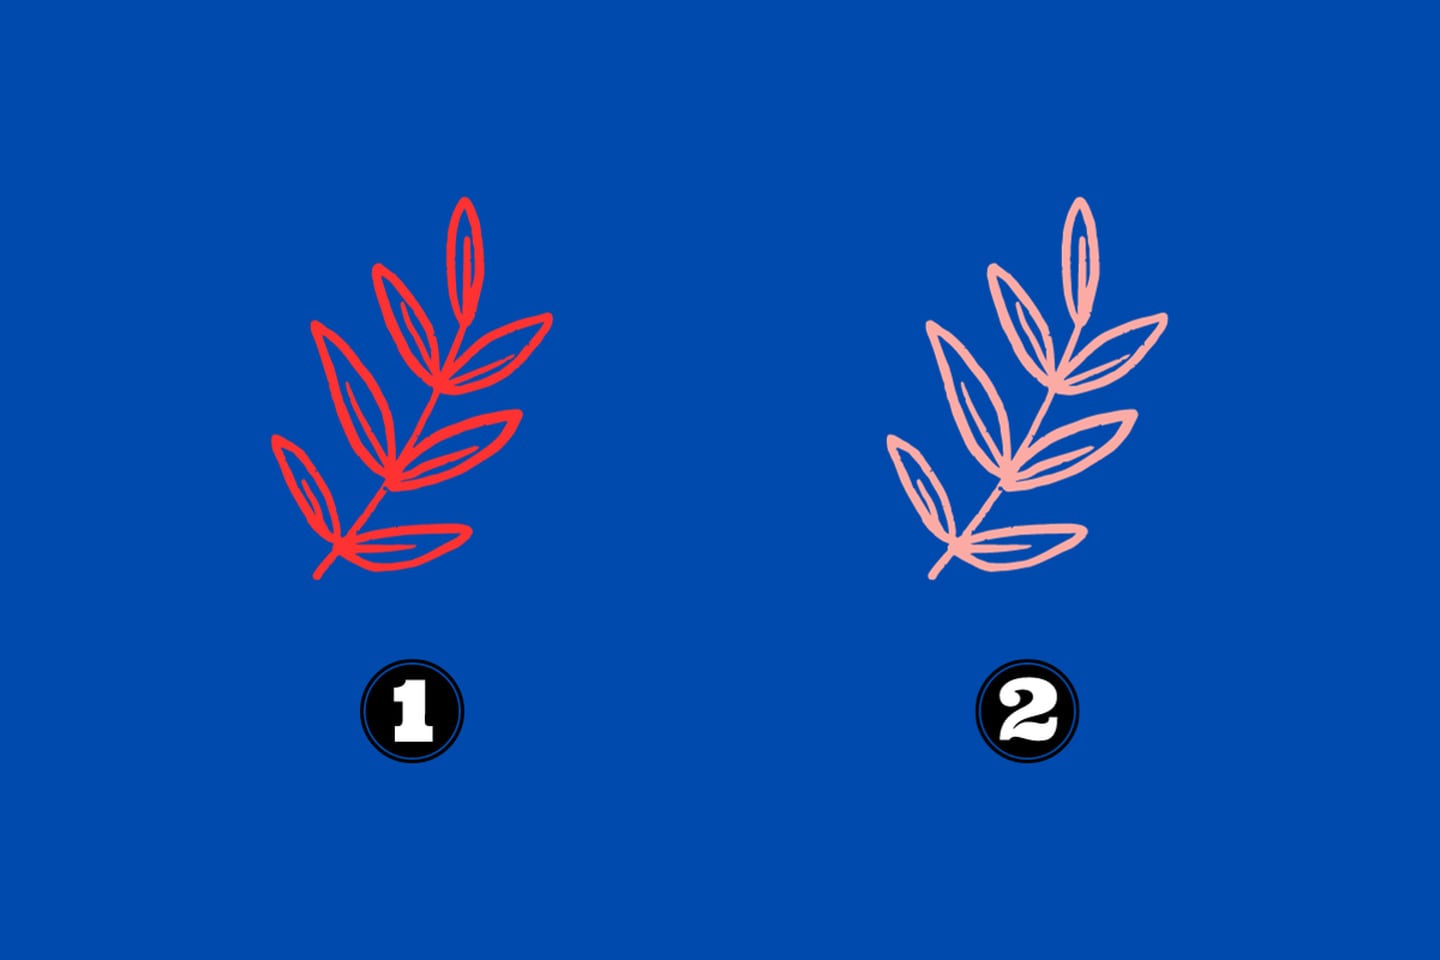 Dos opciones que son hojas iguales, pero la primera es de color rojo y la otra rosado.